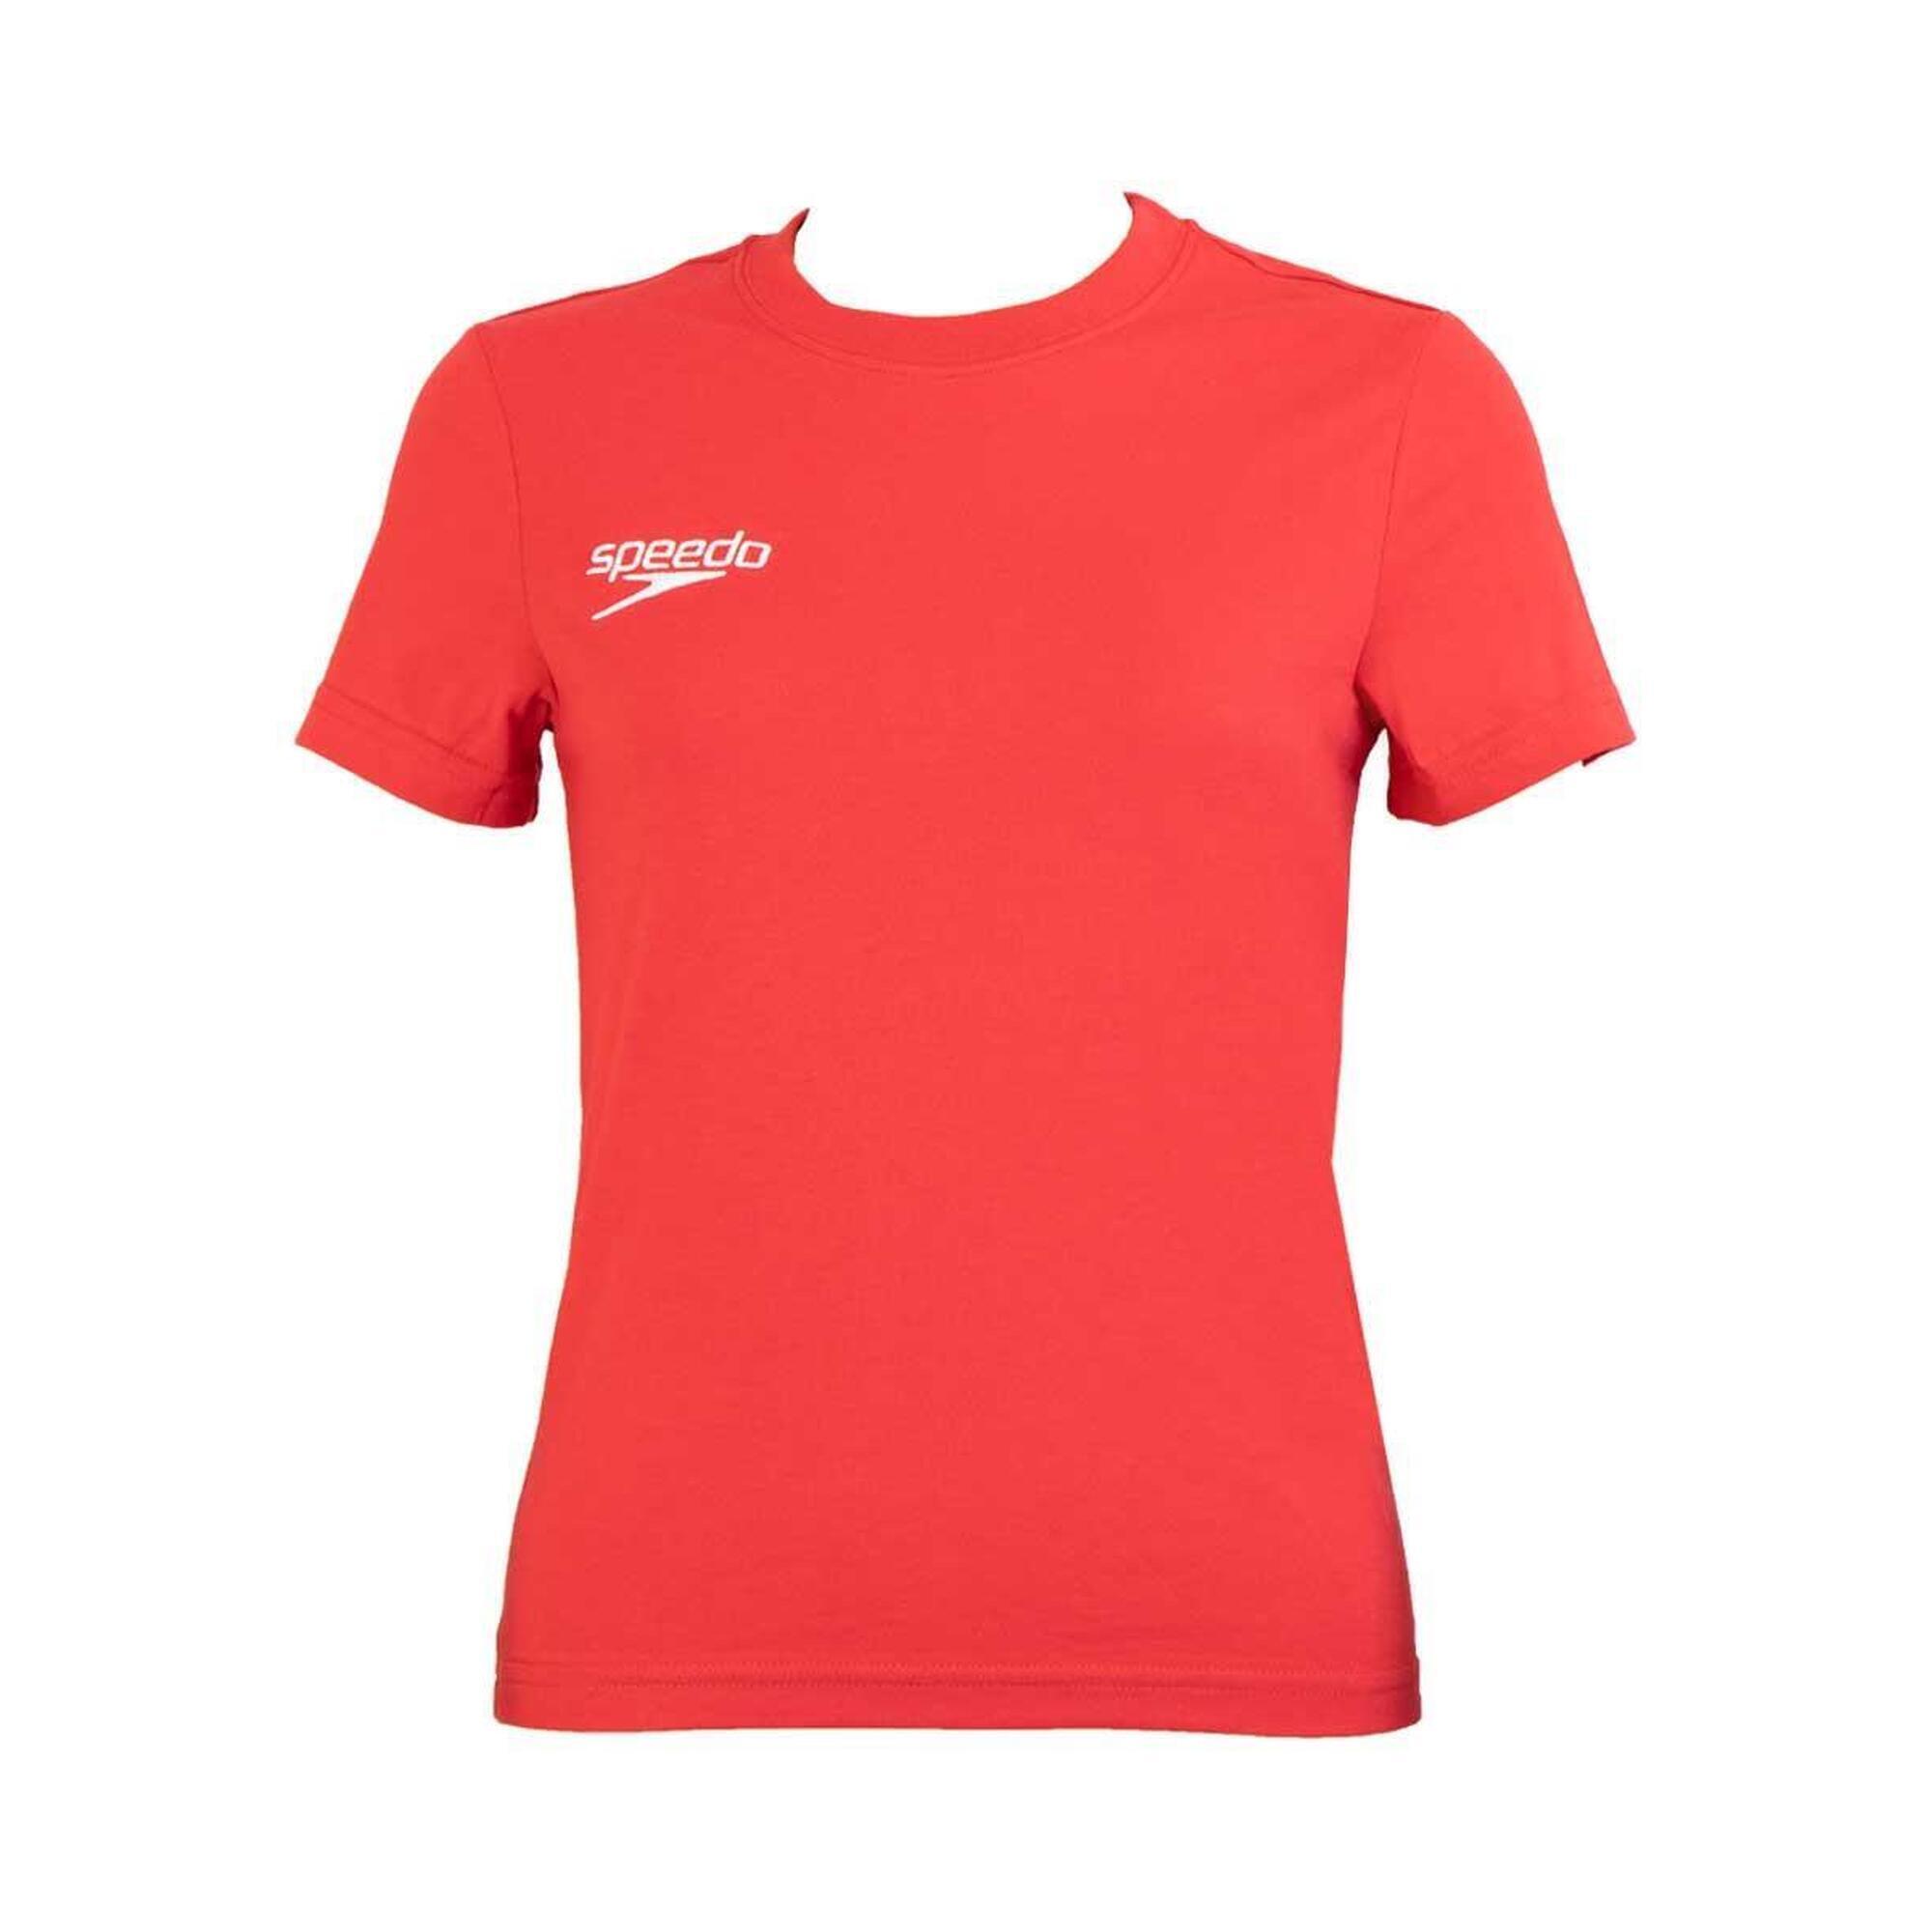 SPEEDO Speedo Team Kit Junior Small Logo T-Shirt - Red